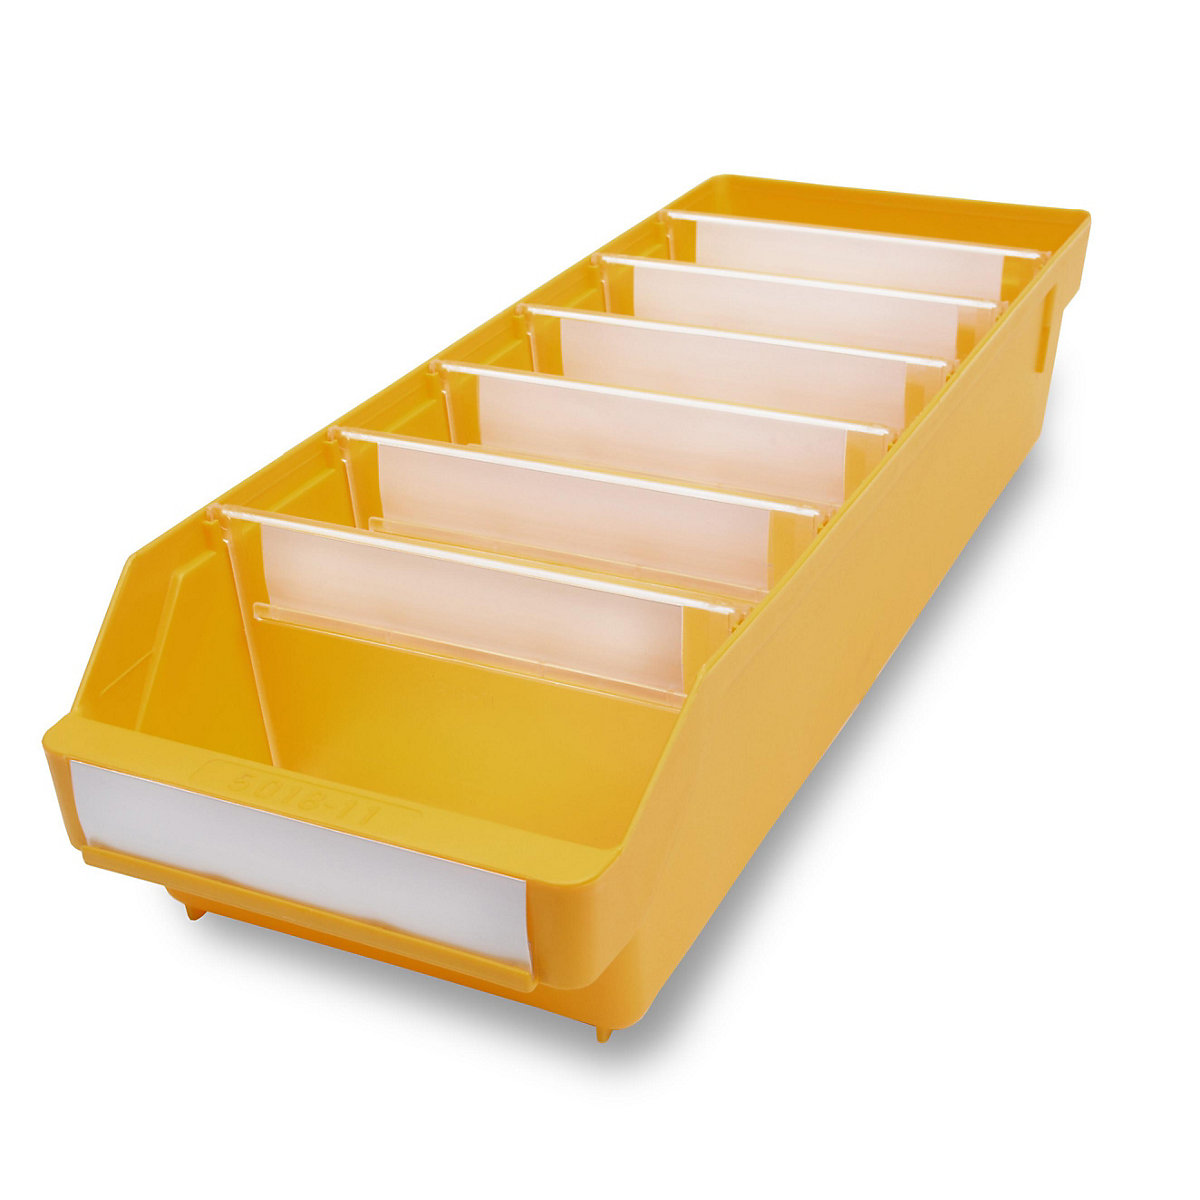 STEMO Regalkasten aus hochschlagfestem Polypropylen, gelb, LxBxH 500 x 180 x 110 mm, VE 20 Stk